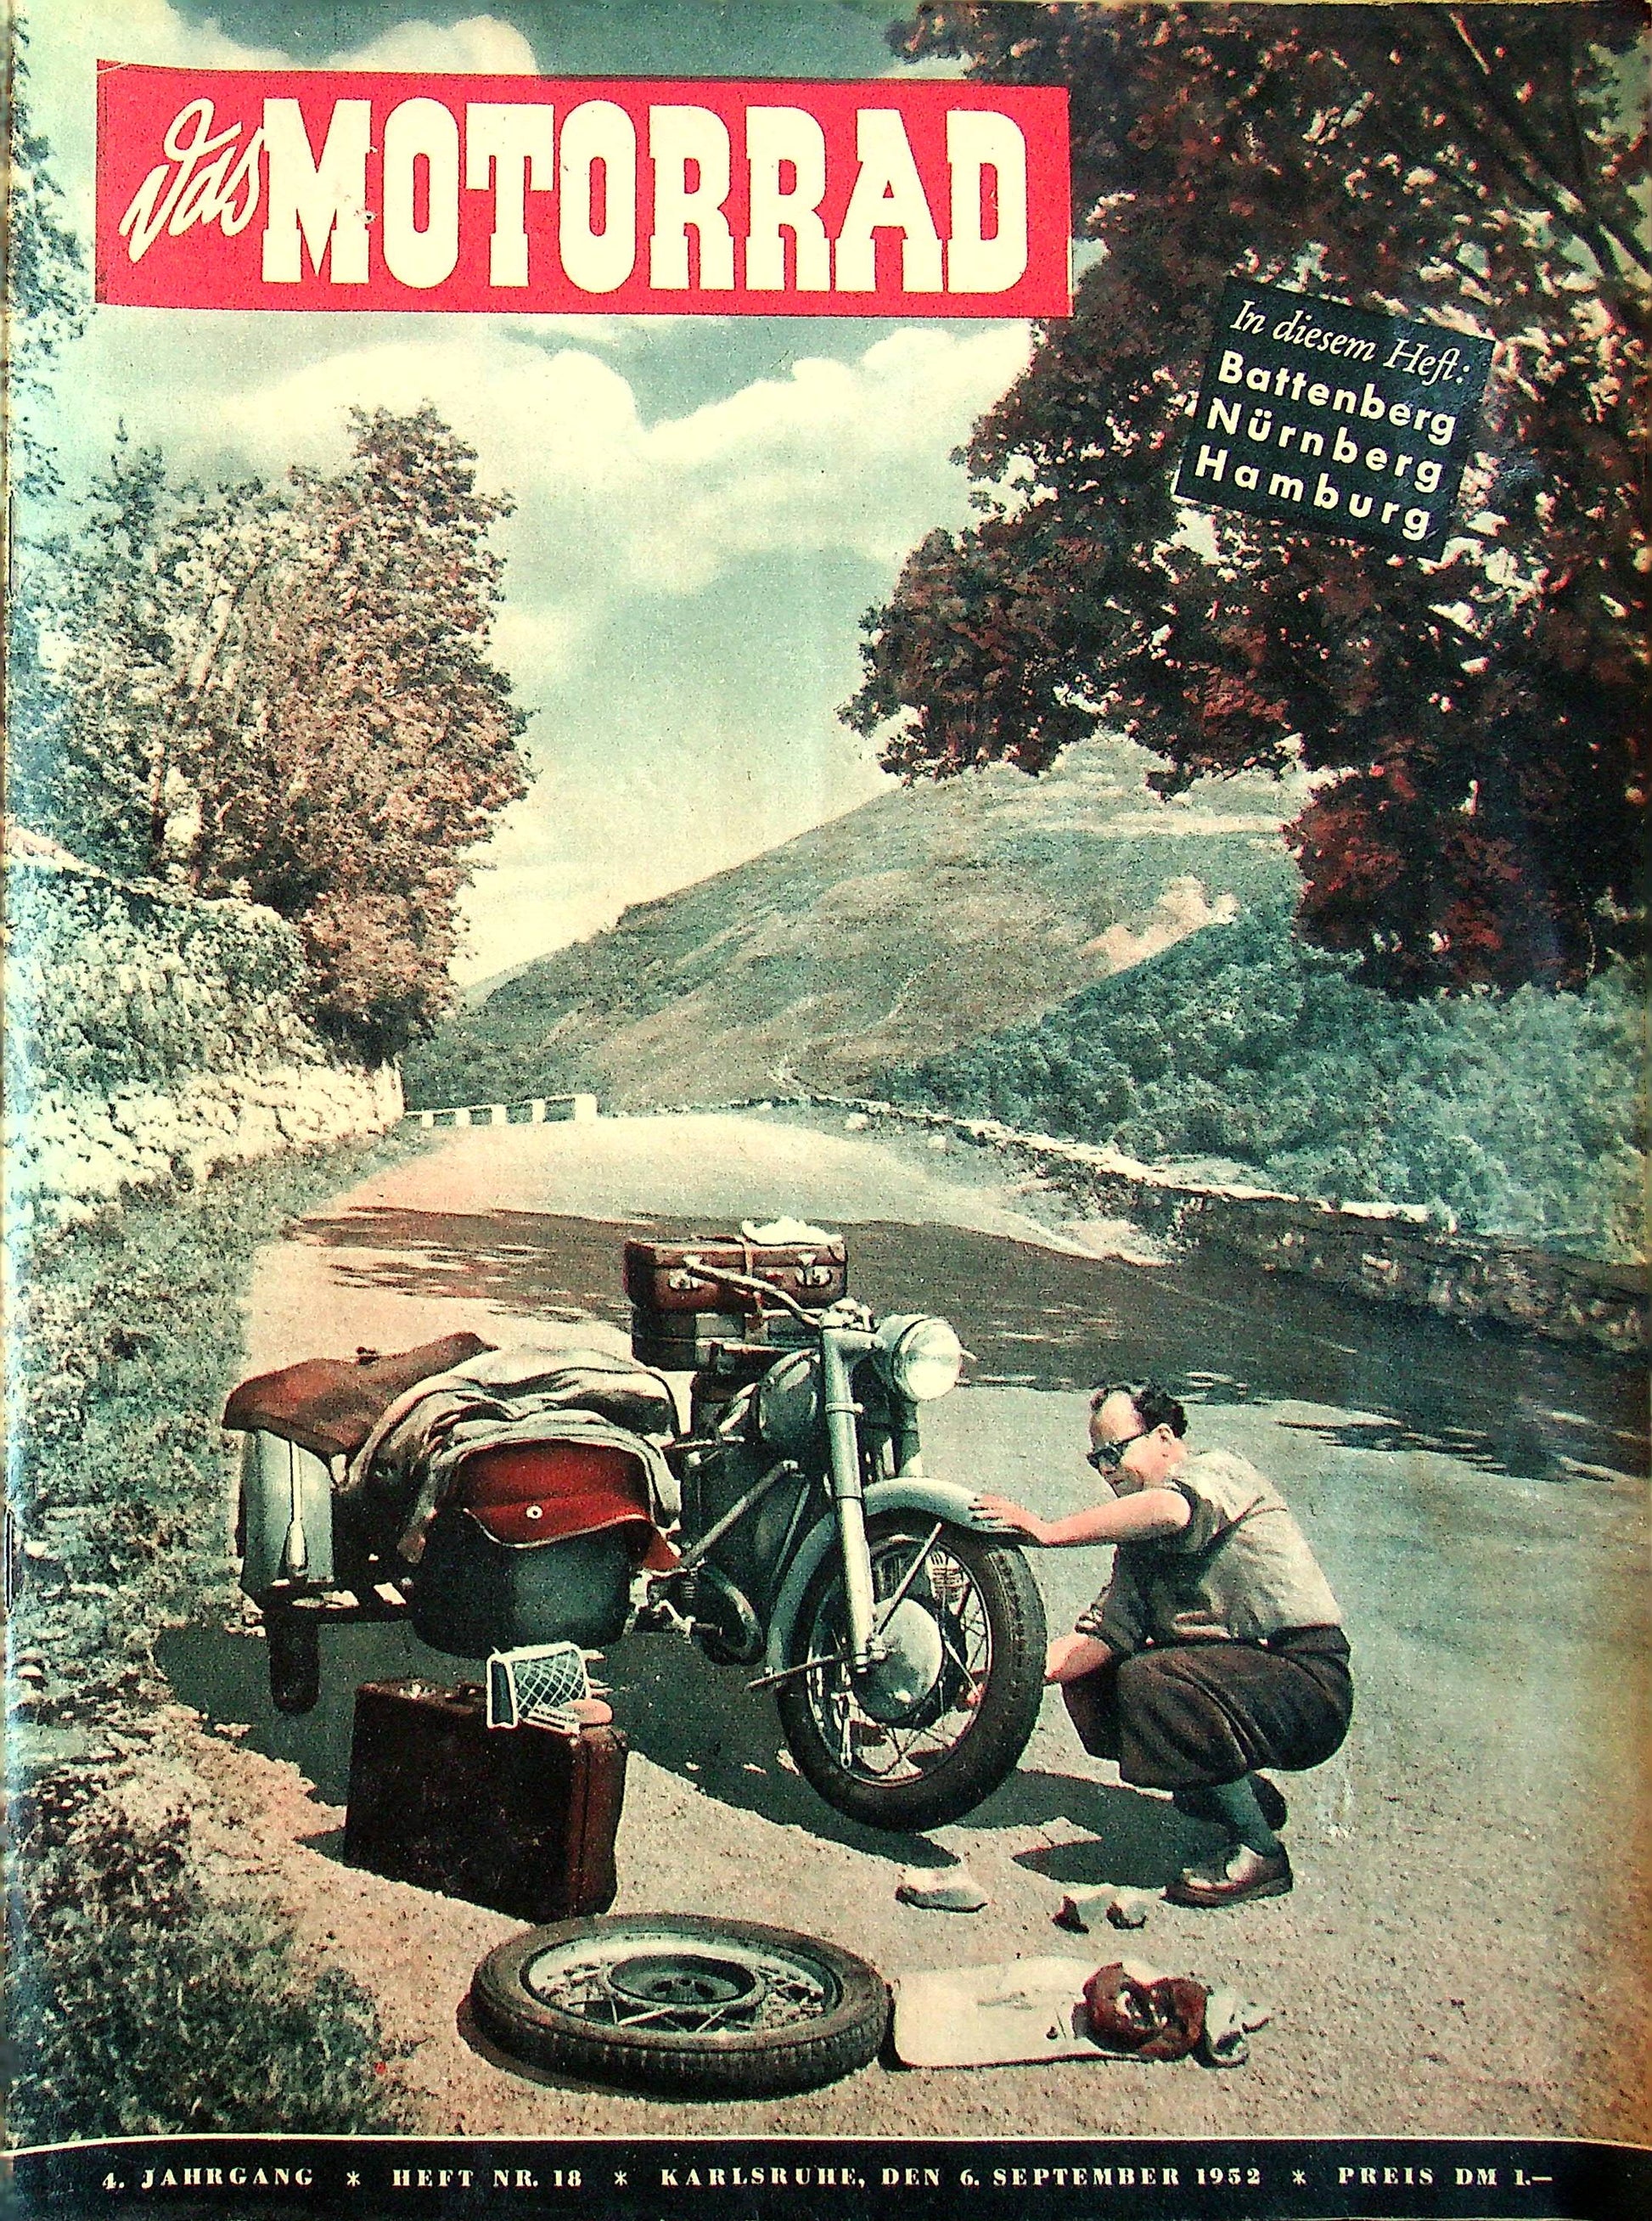 Motorrad 18/1952